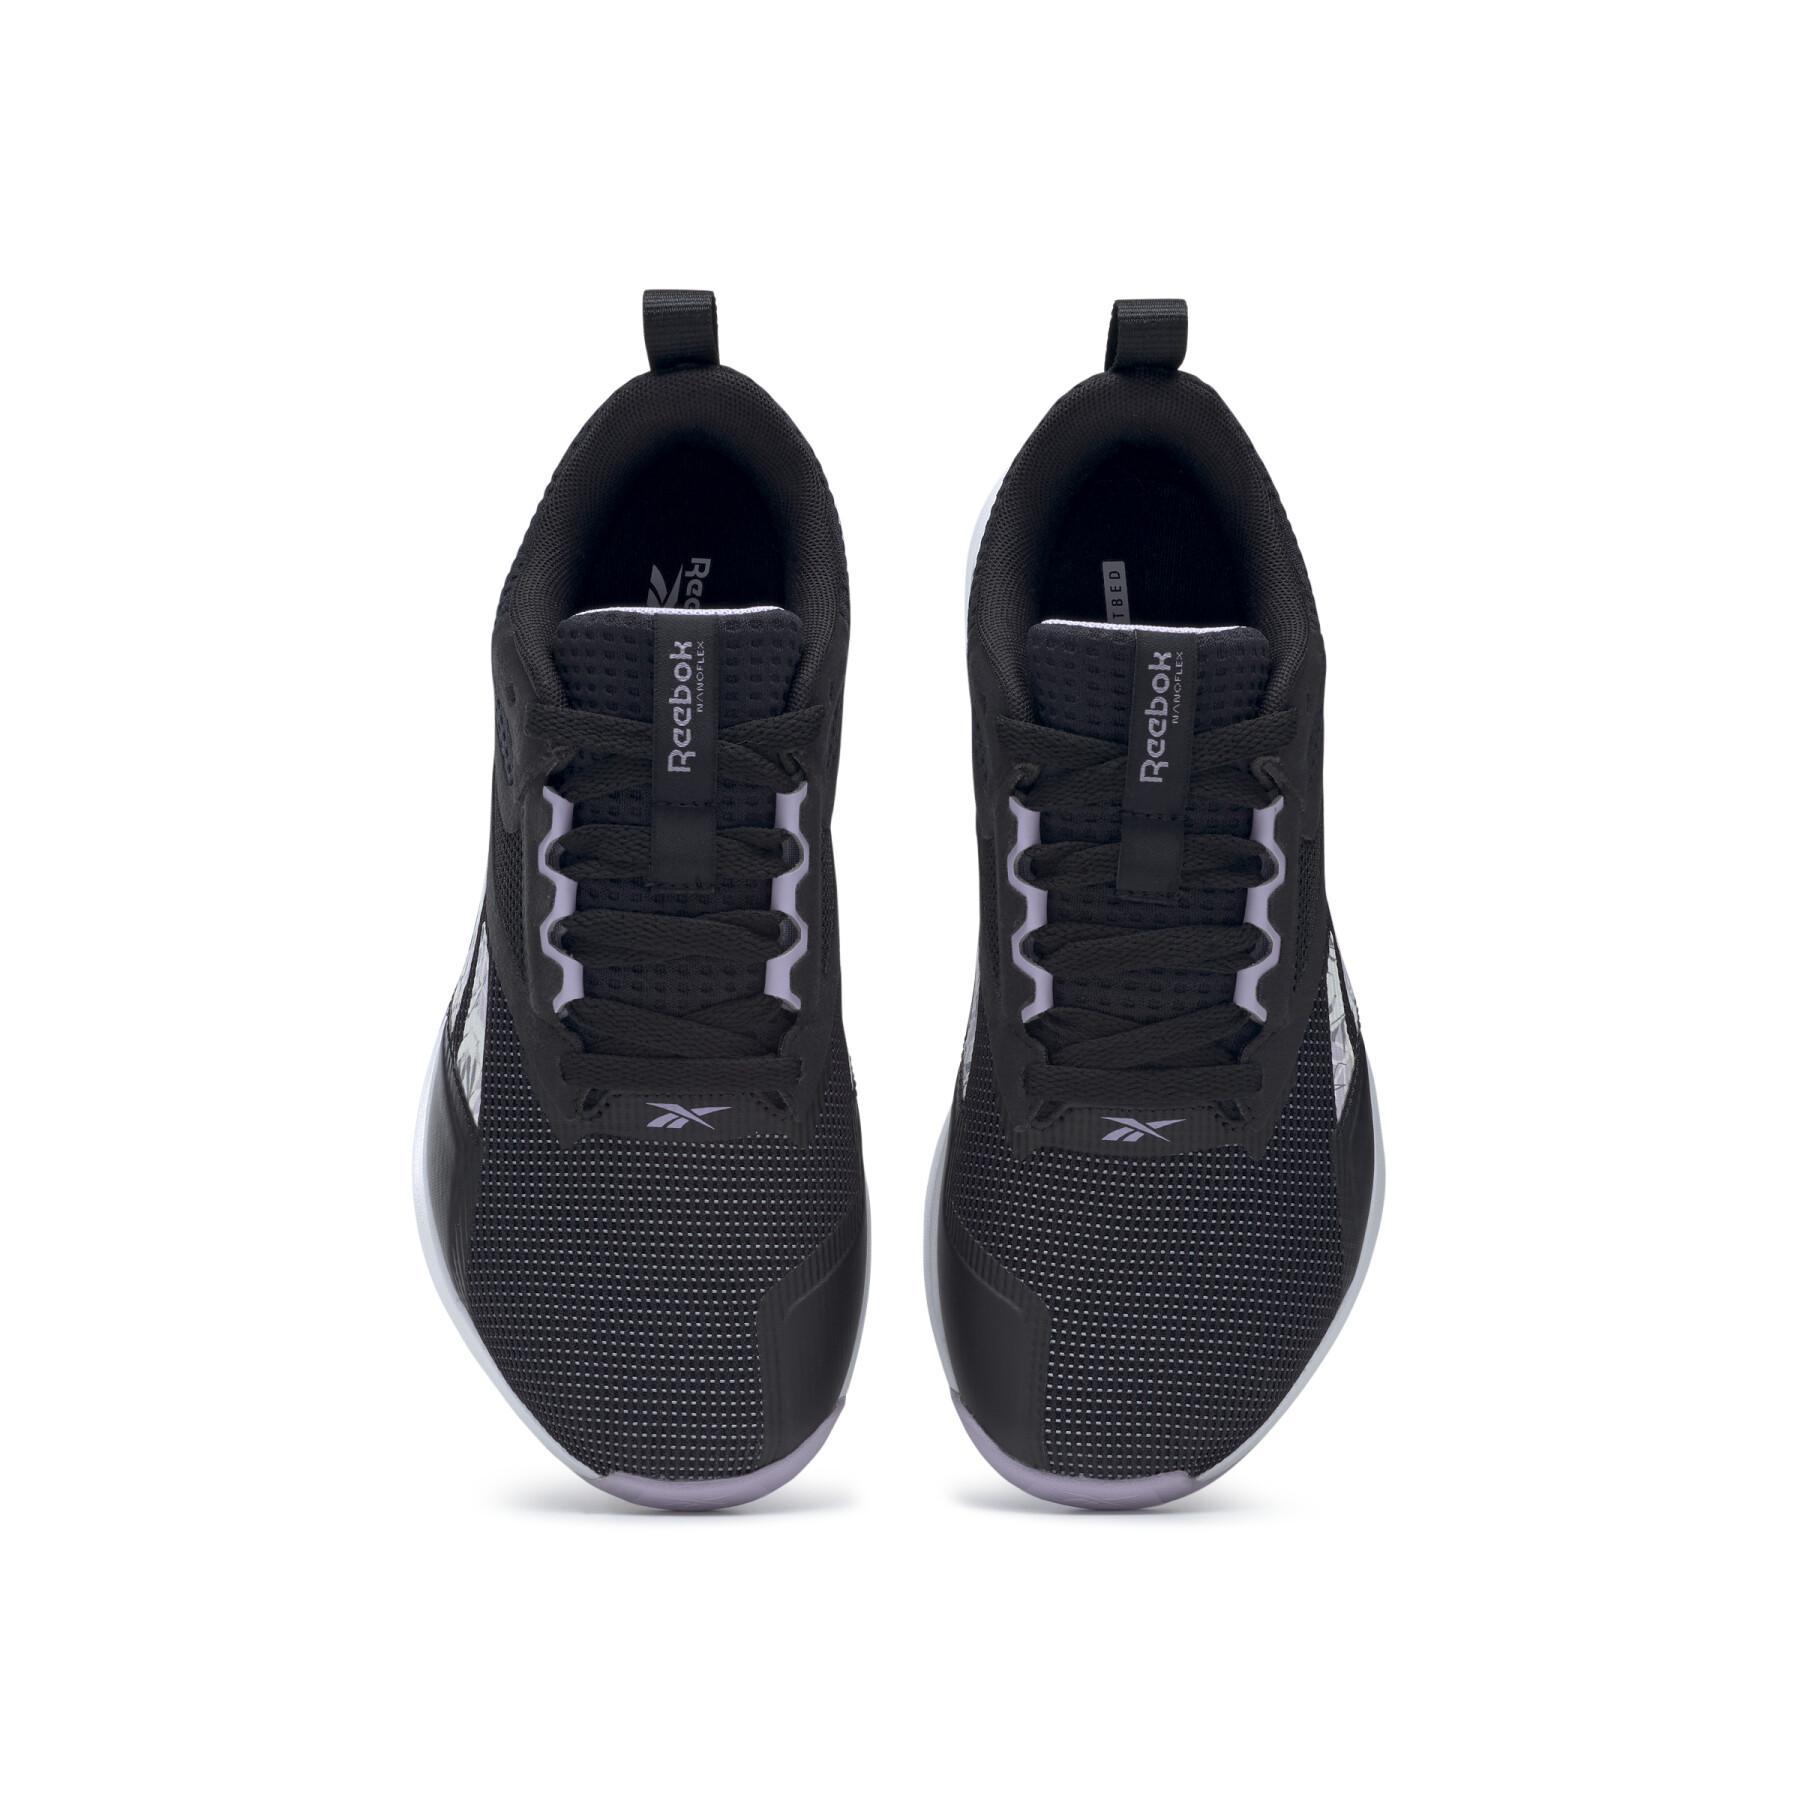 Damskie buty cross-trainingowe Reebok Nanoflex Tr V2